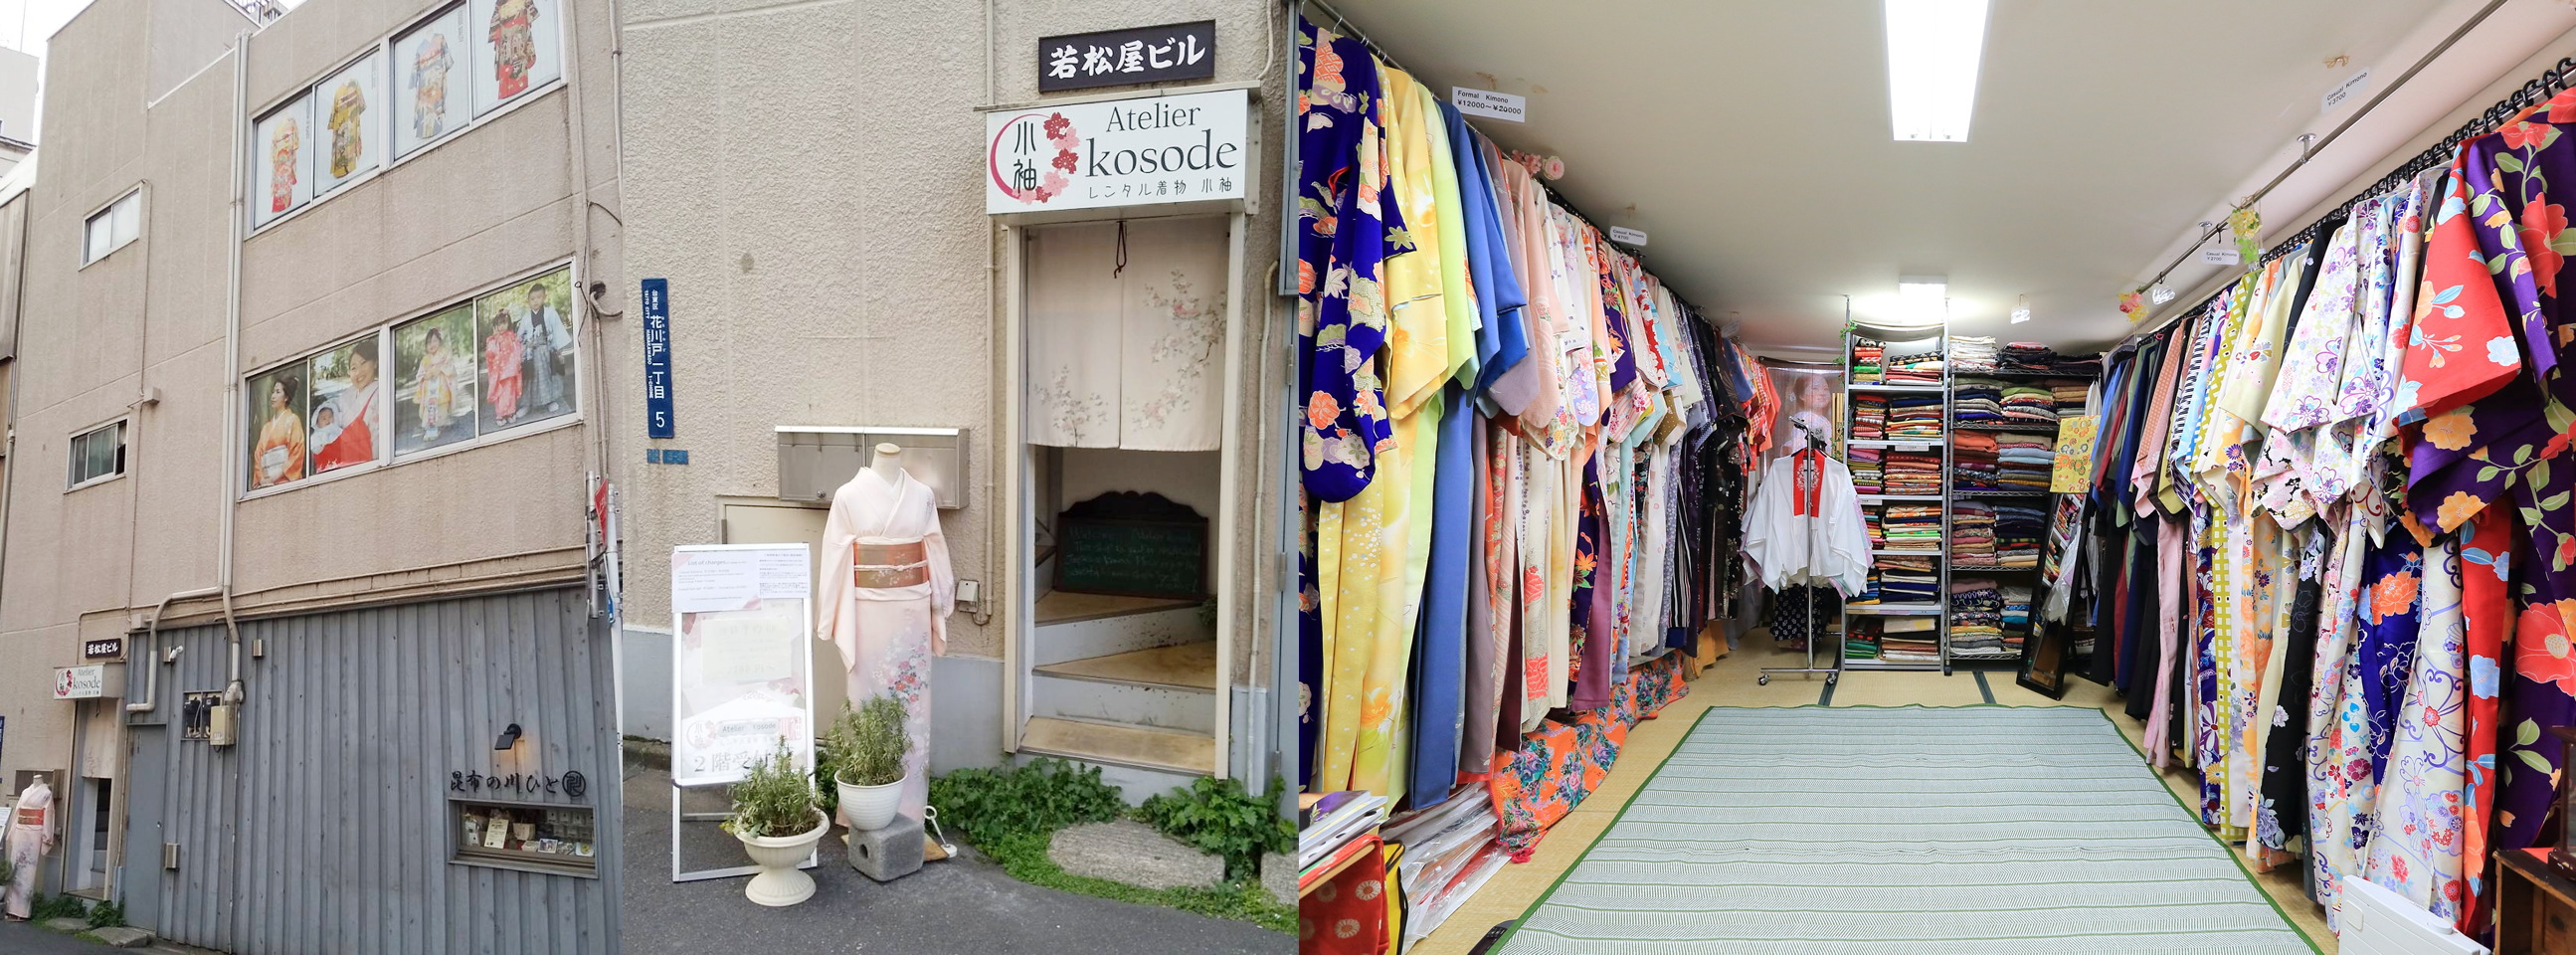 東京浅草着物レンタル小袖の店舗外観写真及びレンタル着物店内写真